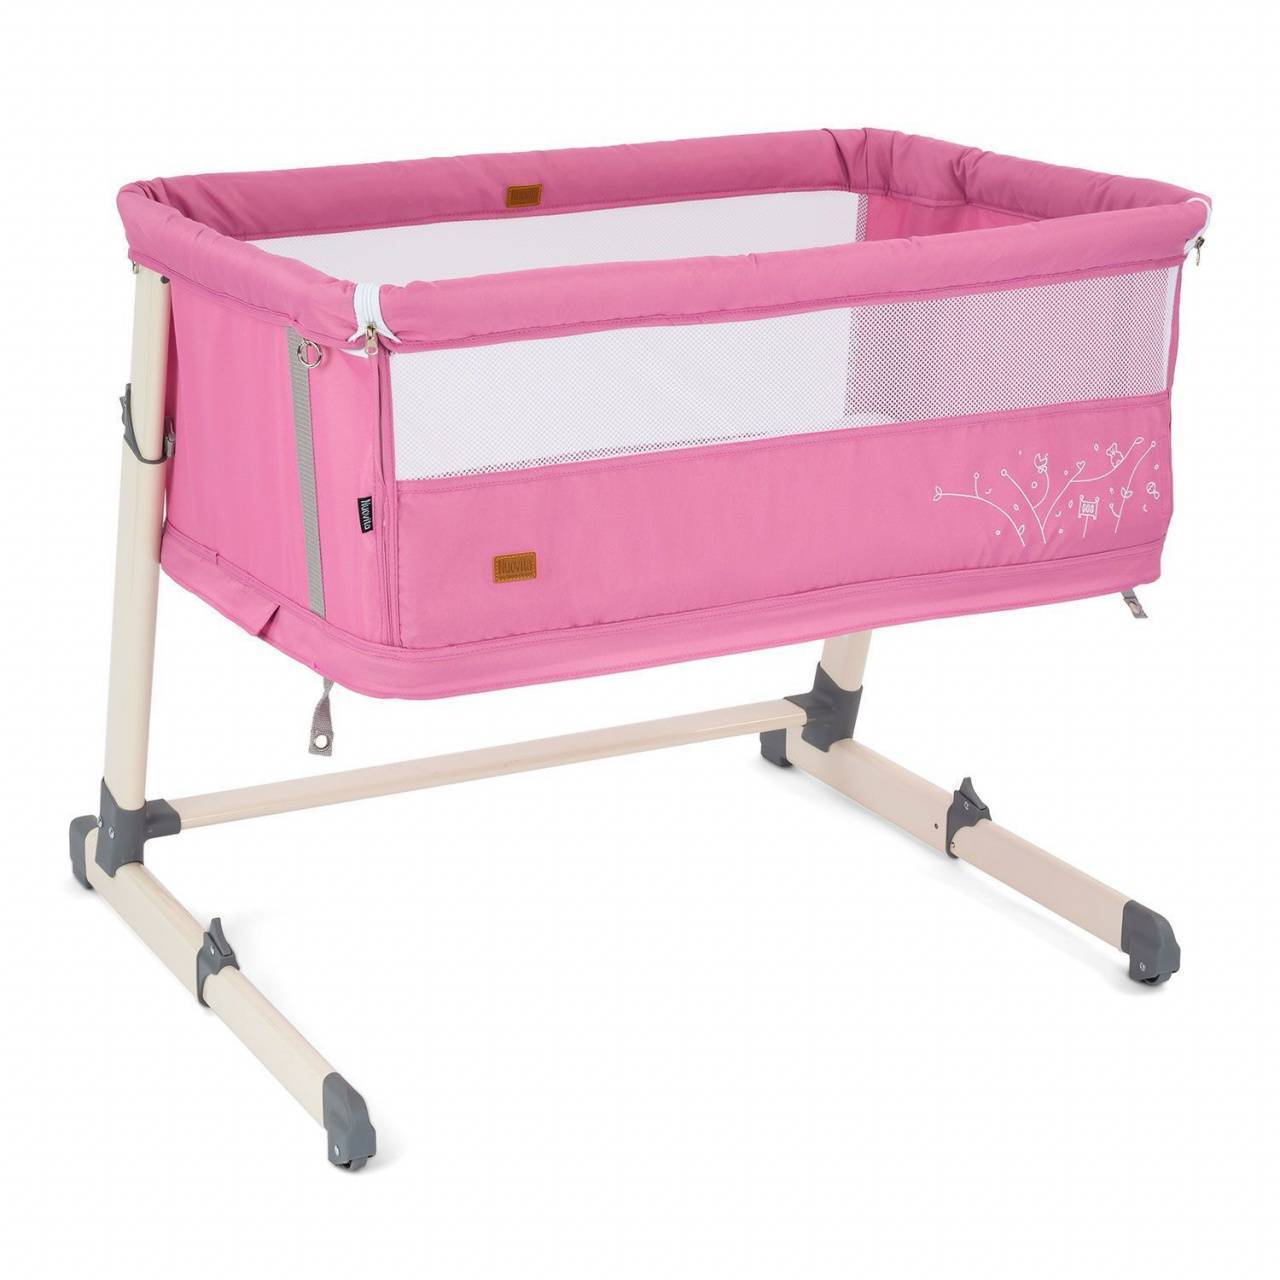 Приставная кровать Nuovita Accanto Calma цвет: Rosa/Розовый